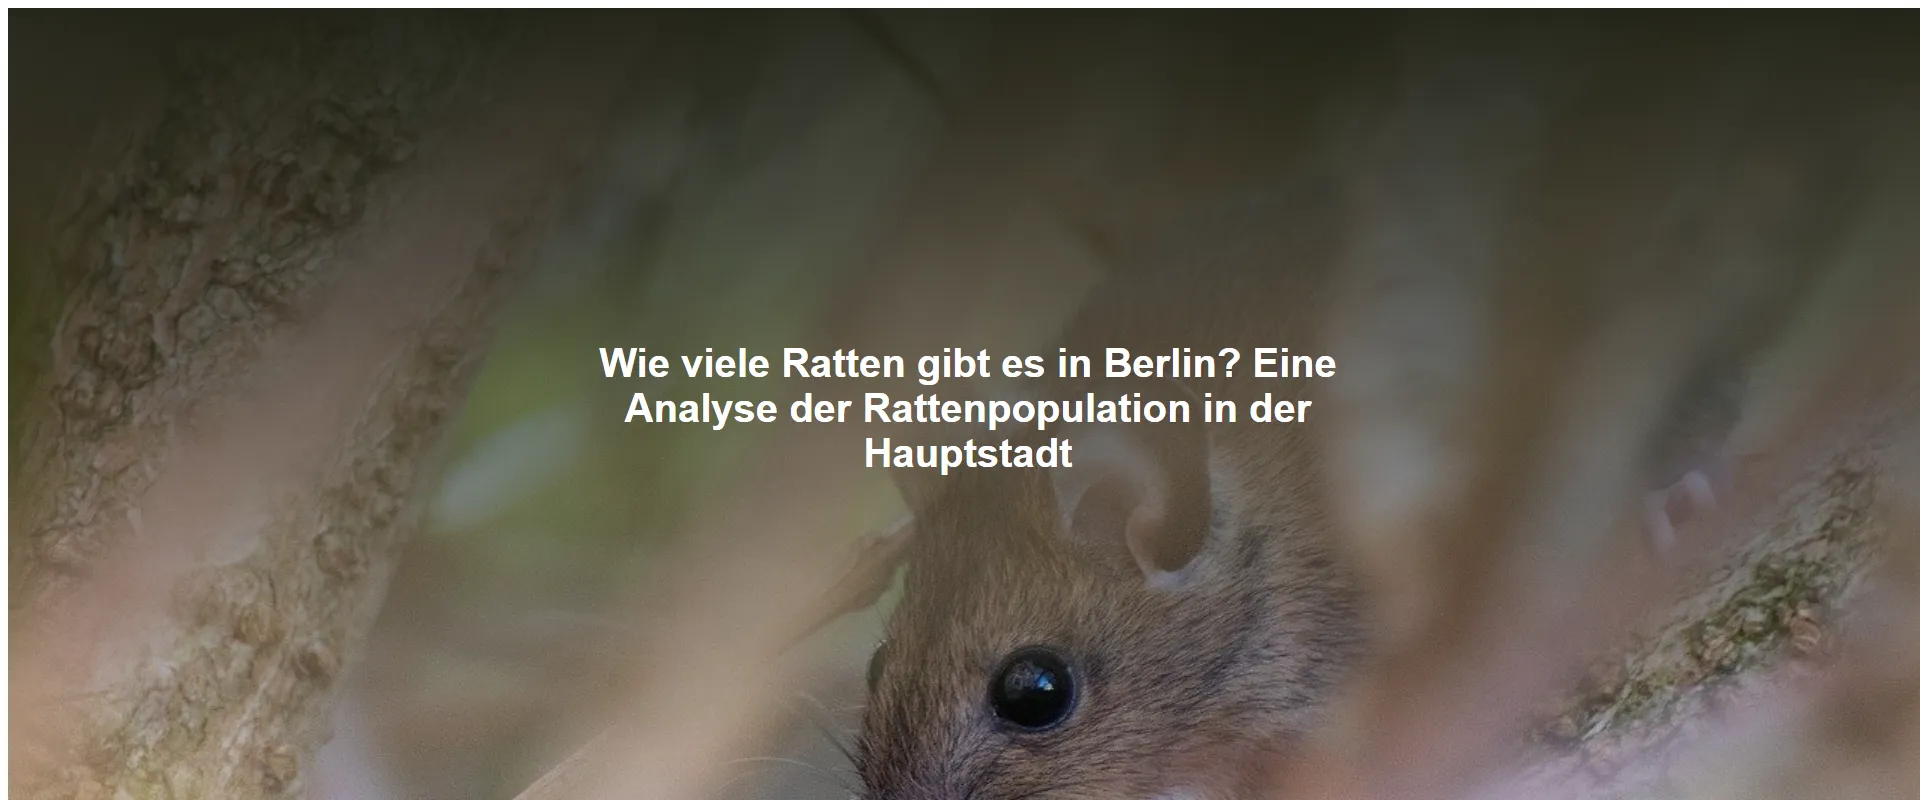 Wie viele Ratten gibt es in Berlin? Eine Analyse der Rattenpopulation in der Hauptstadt